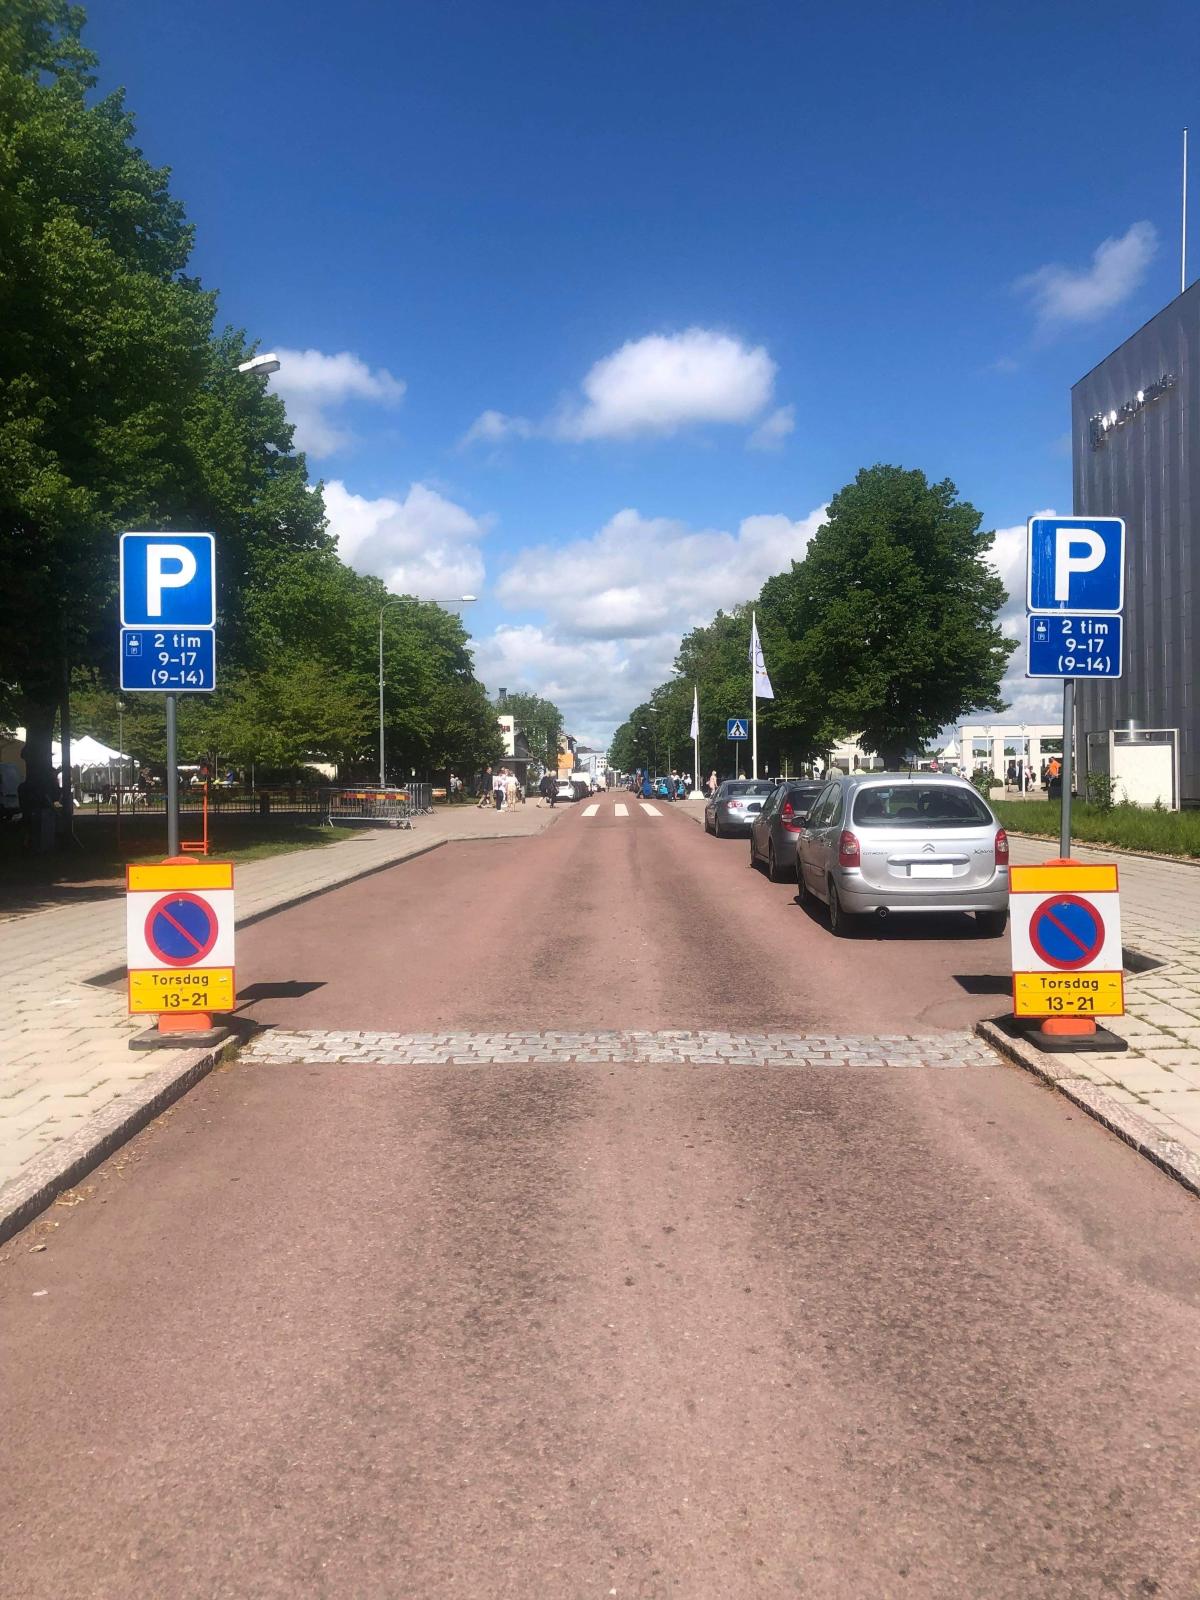 Bild på parkeringsförbudsskyltar och parkerade bilar längs med en gata i stadsmiljö